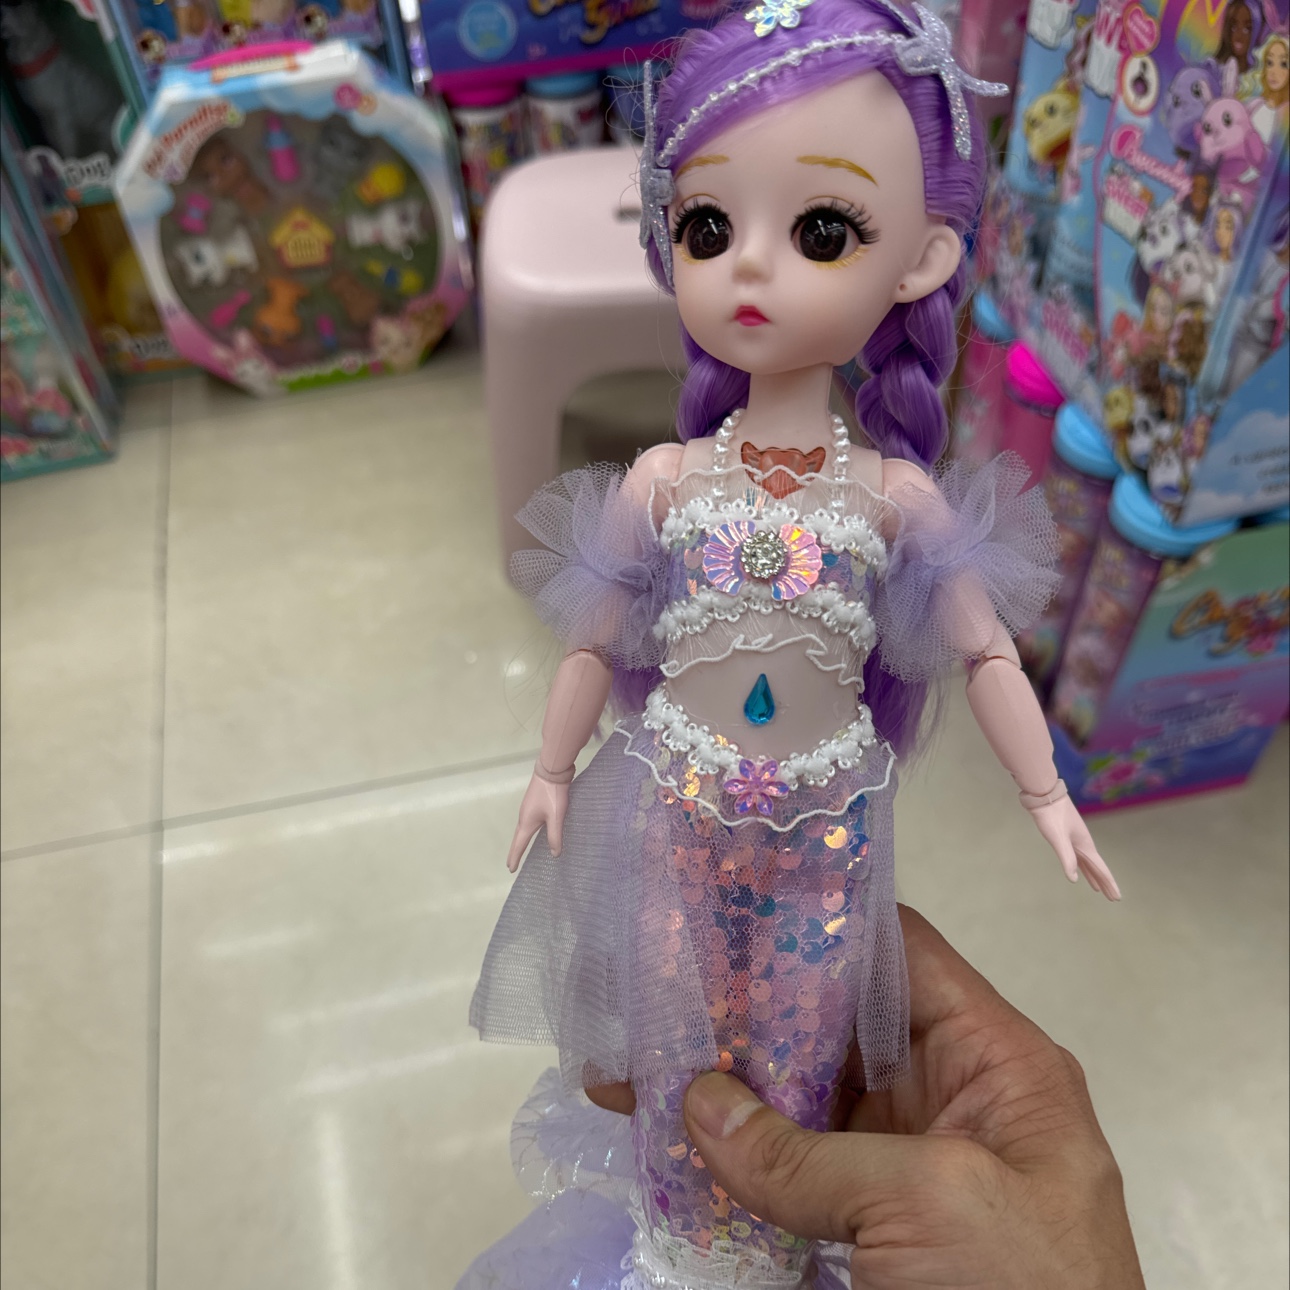 芭比娃娃玩具石膏娃娃飞天娃娃系列 精致可爱女孩心爱的玩伴 适合收藏与游戏